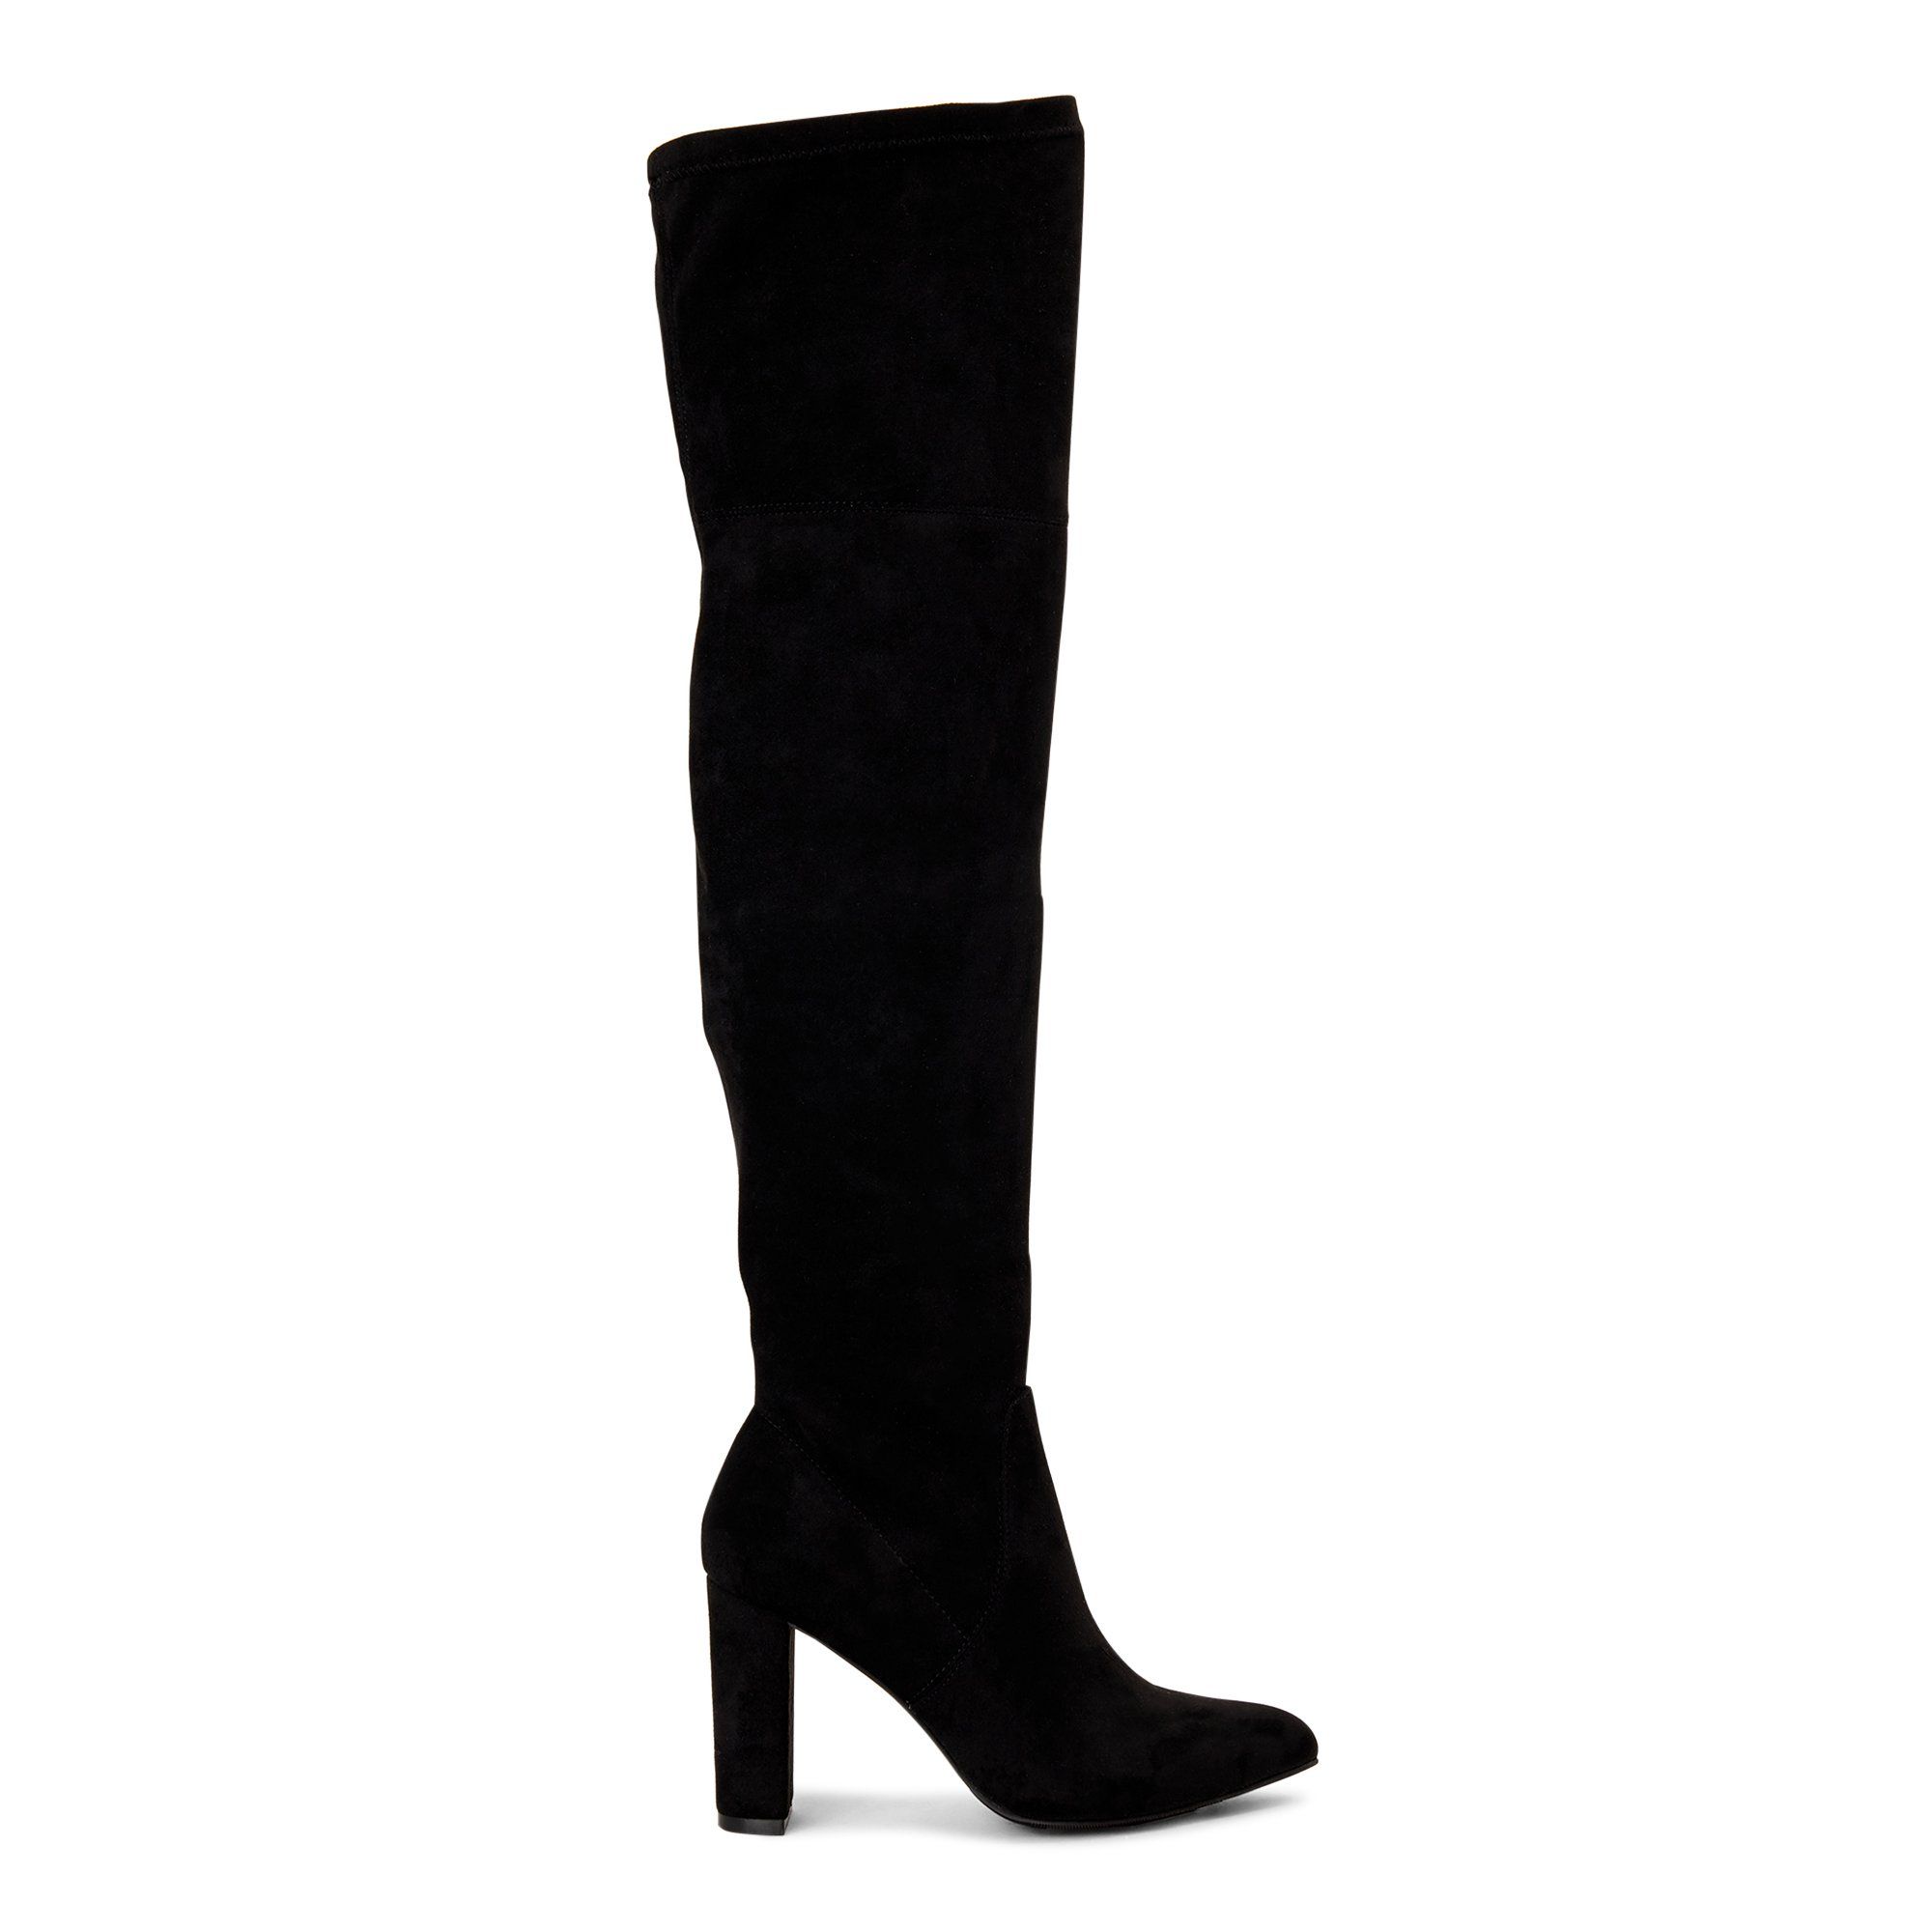 Scoop Alexandra Women’s Over the Knee Heeled Boots | Walmart (US)